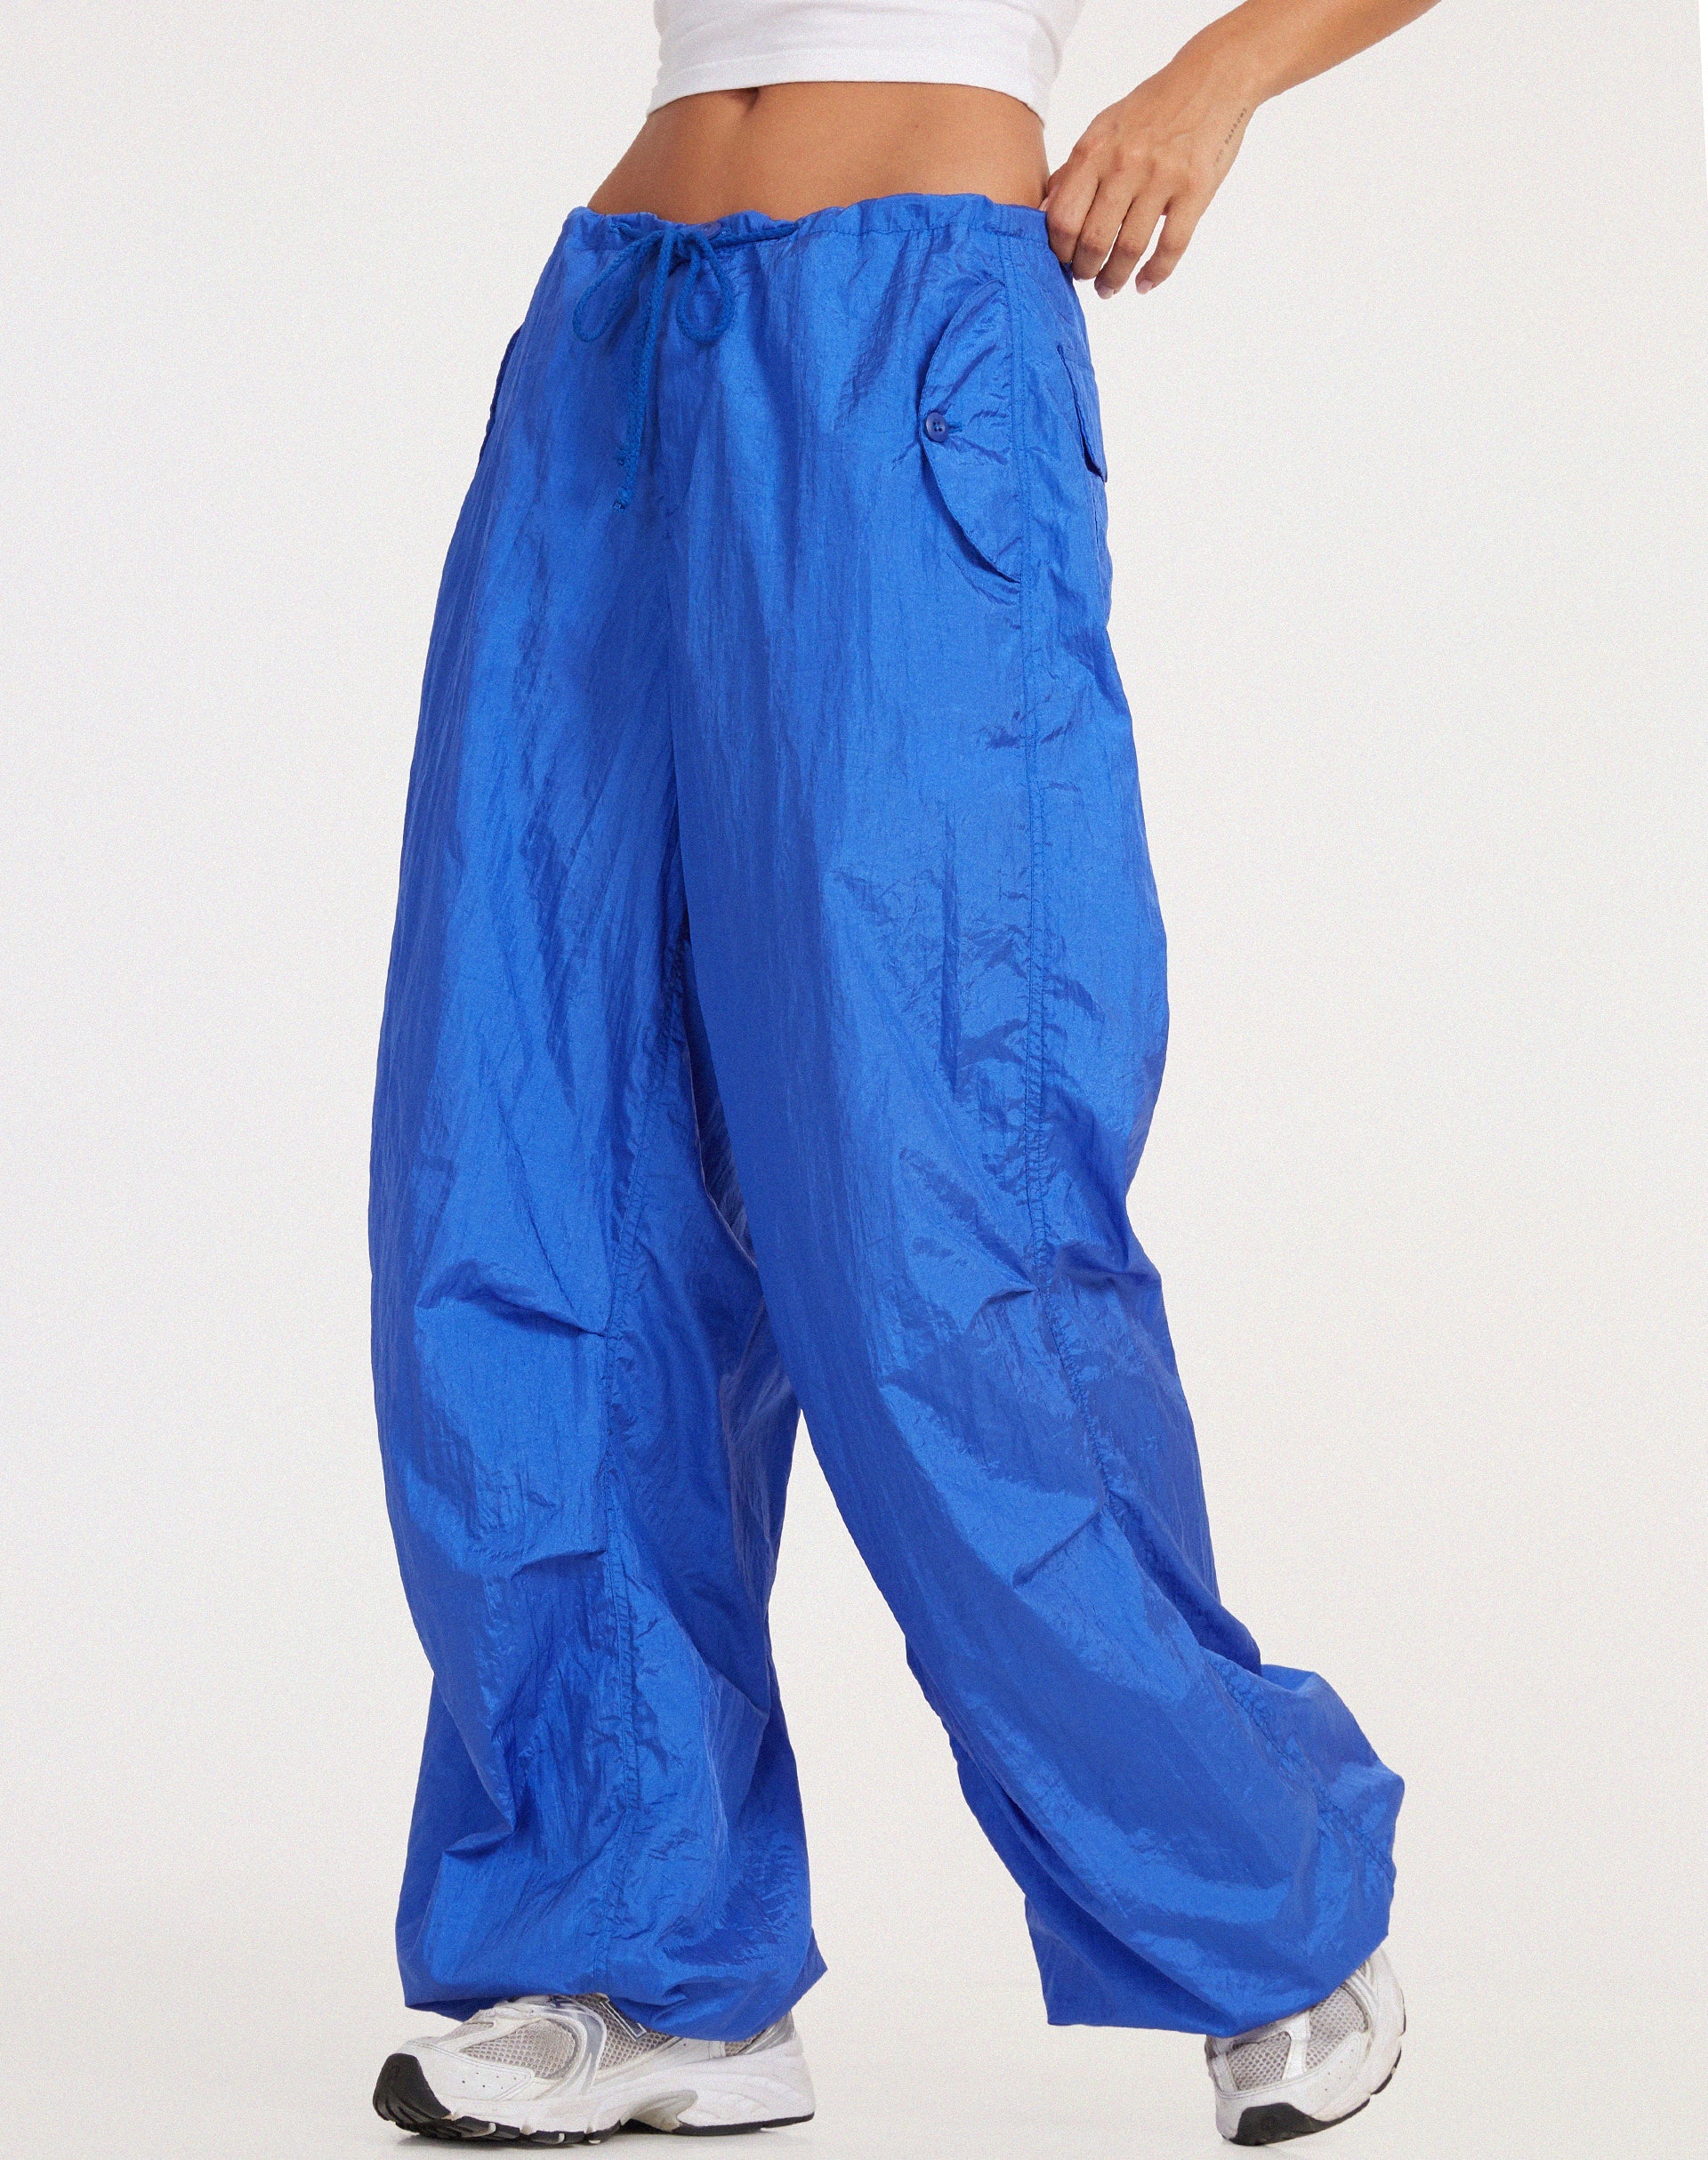 Chute Trouser in Parachute Cobalt Blue